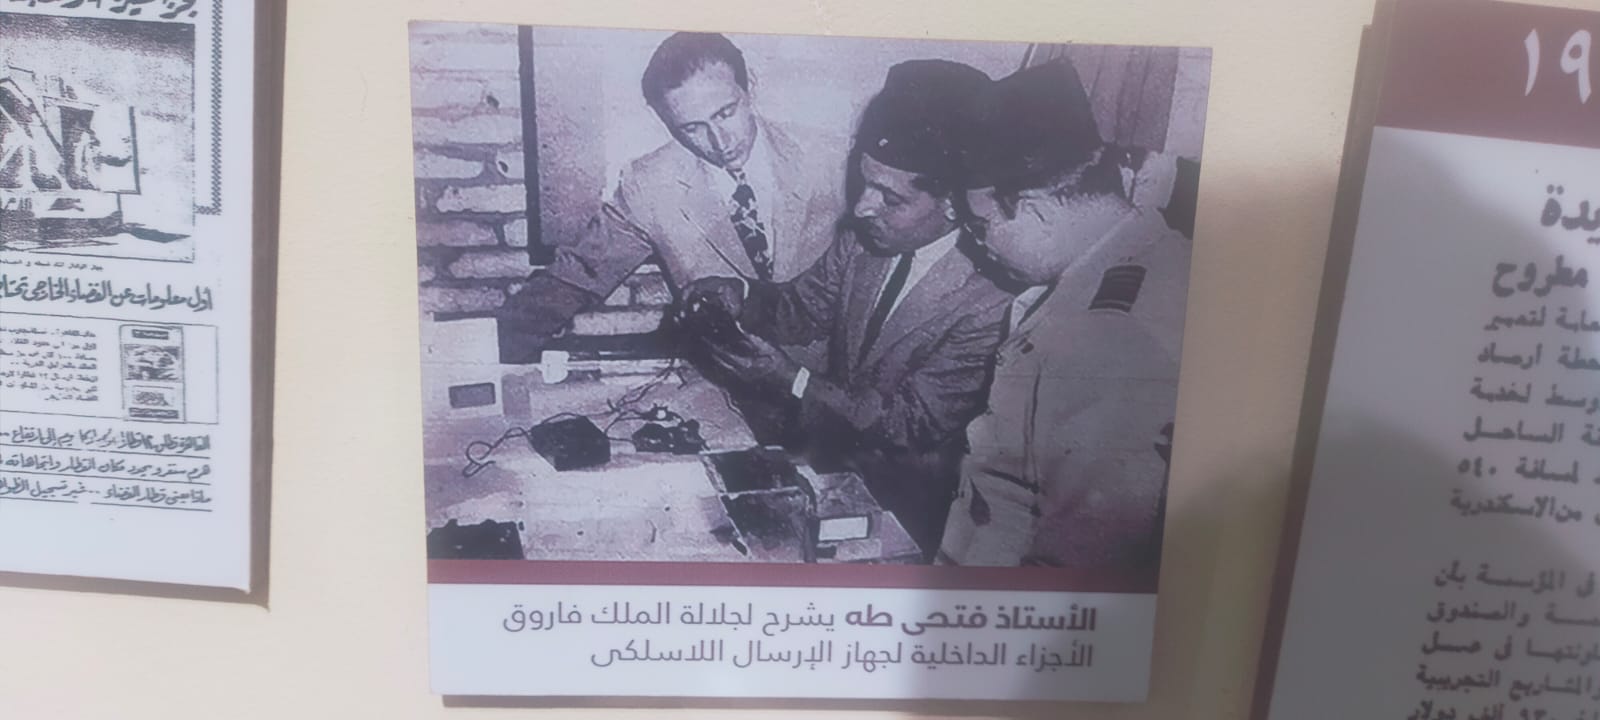 صورة نادرة للملك فاروق وفتحى طه أول رئيس للأرصاد